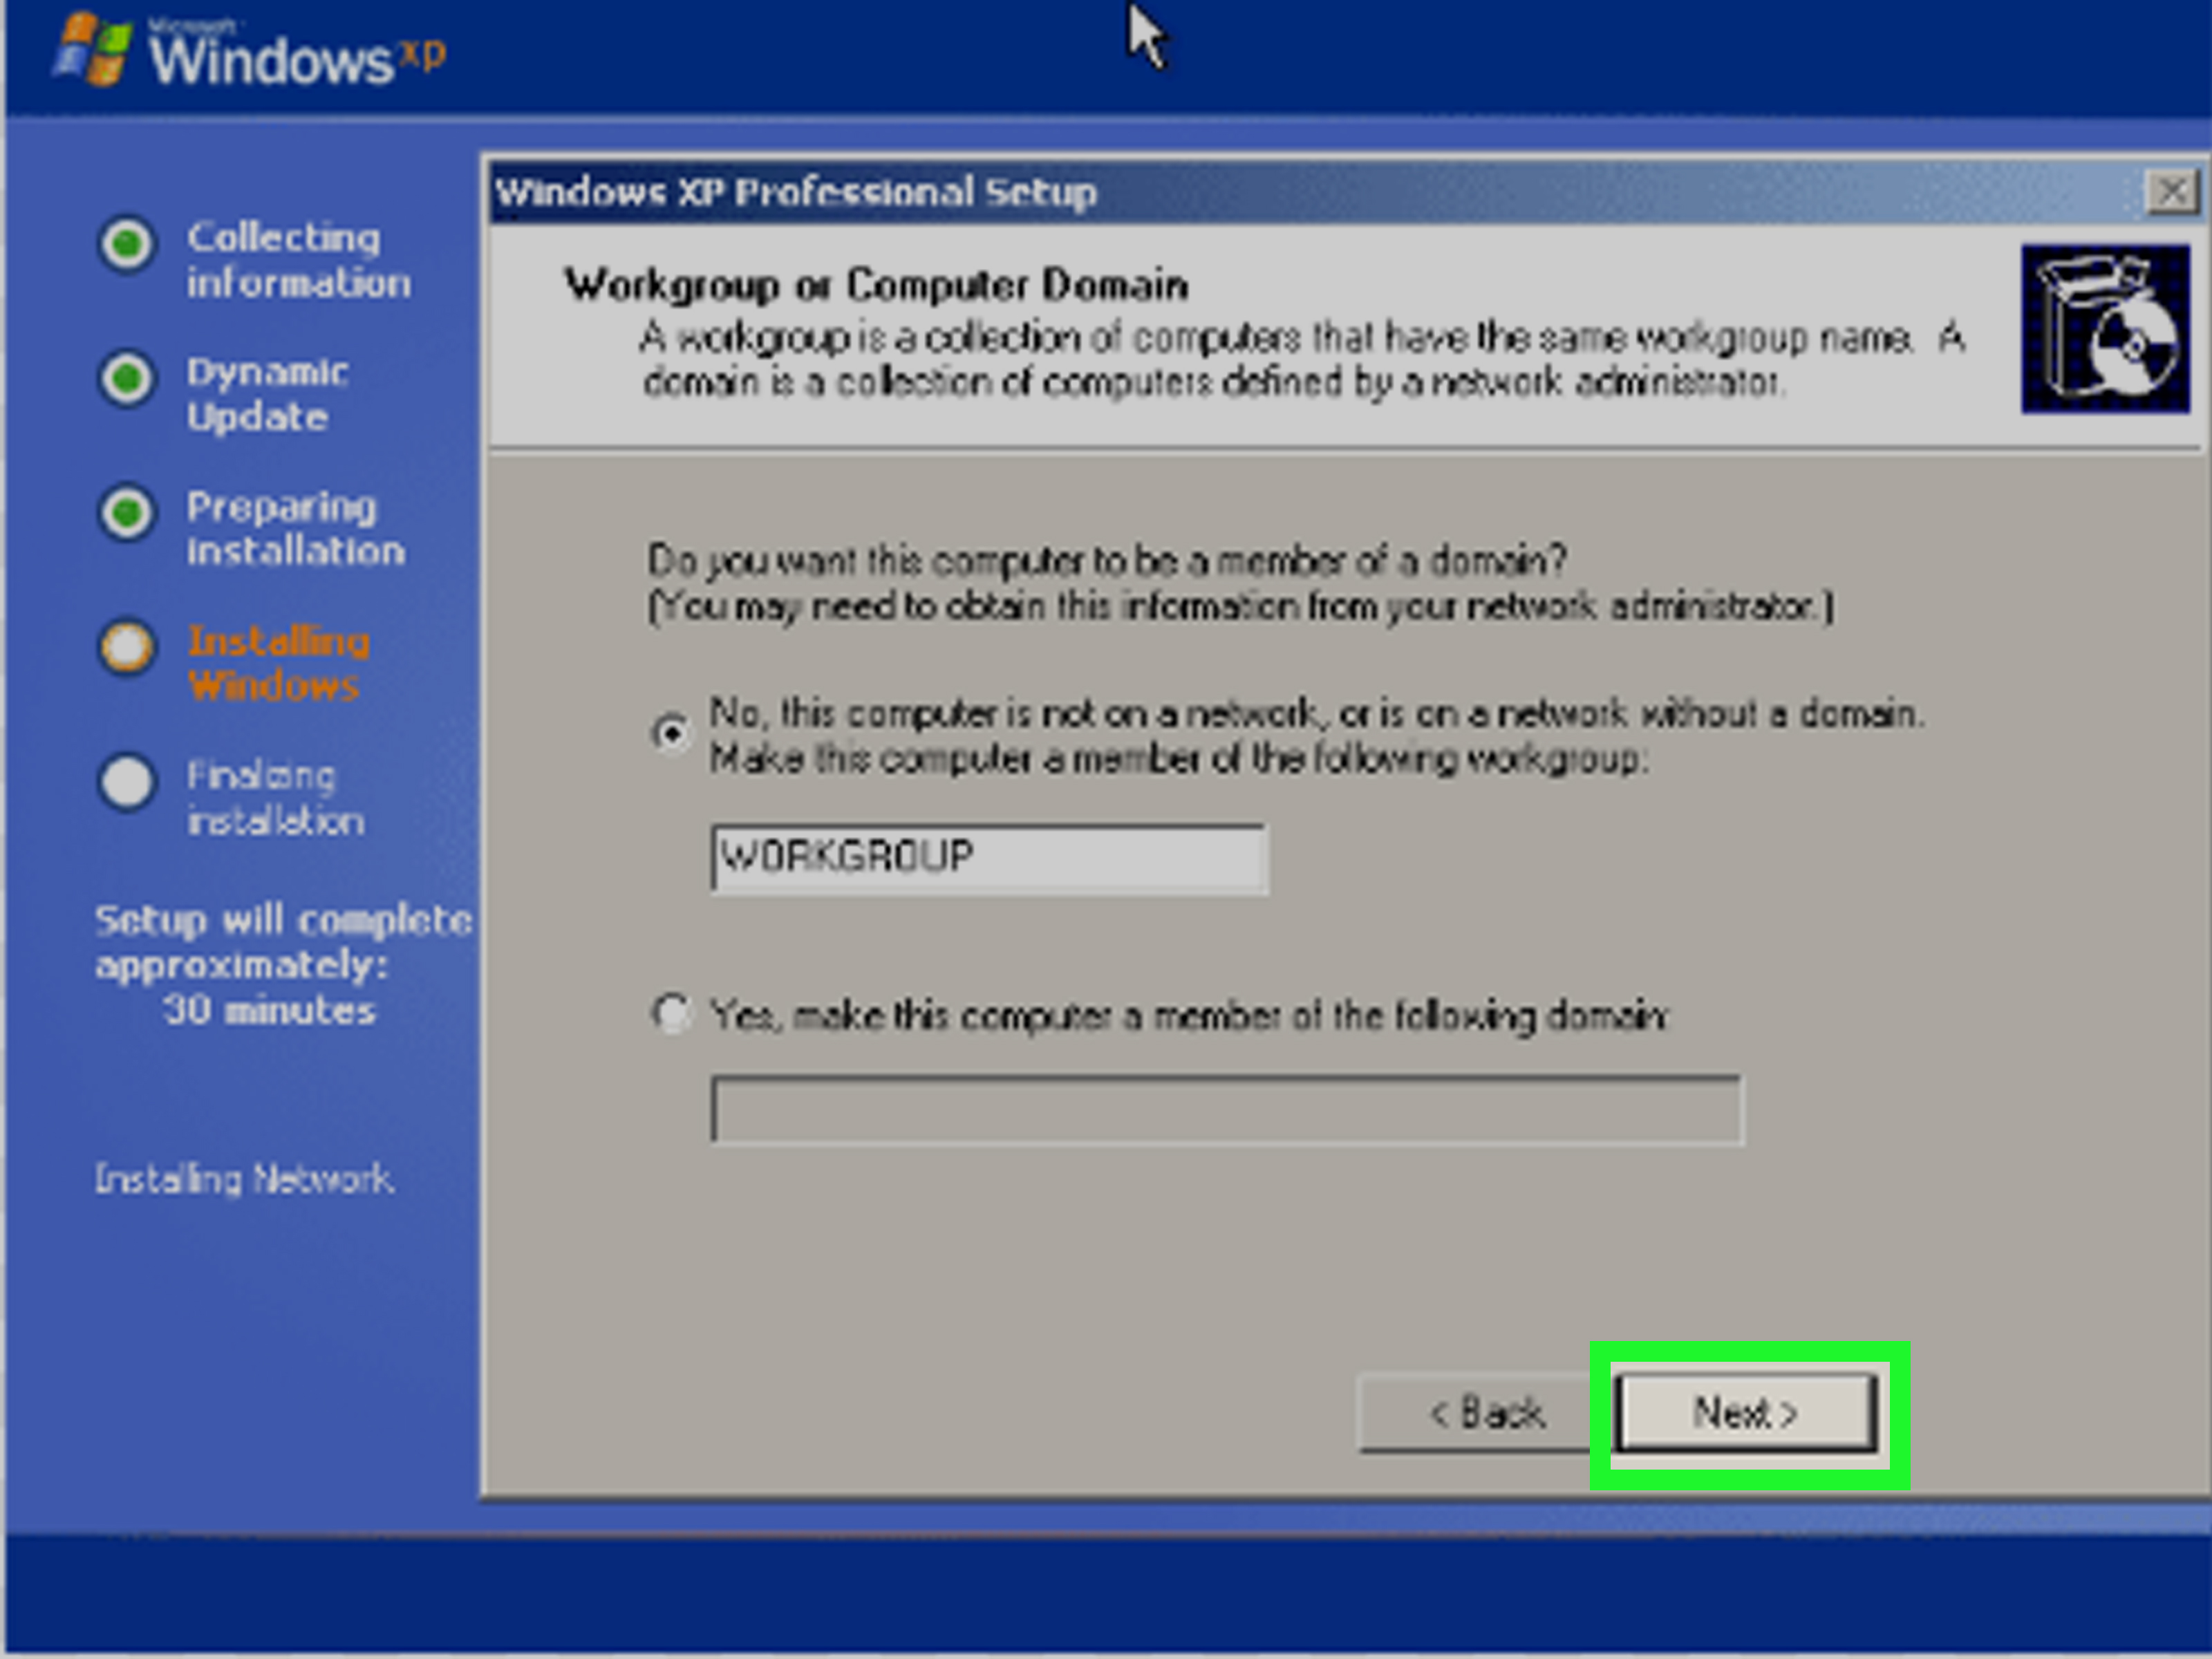 se você reinstalar o Windows XP, você perderá